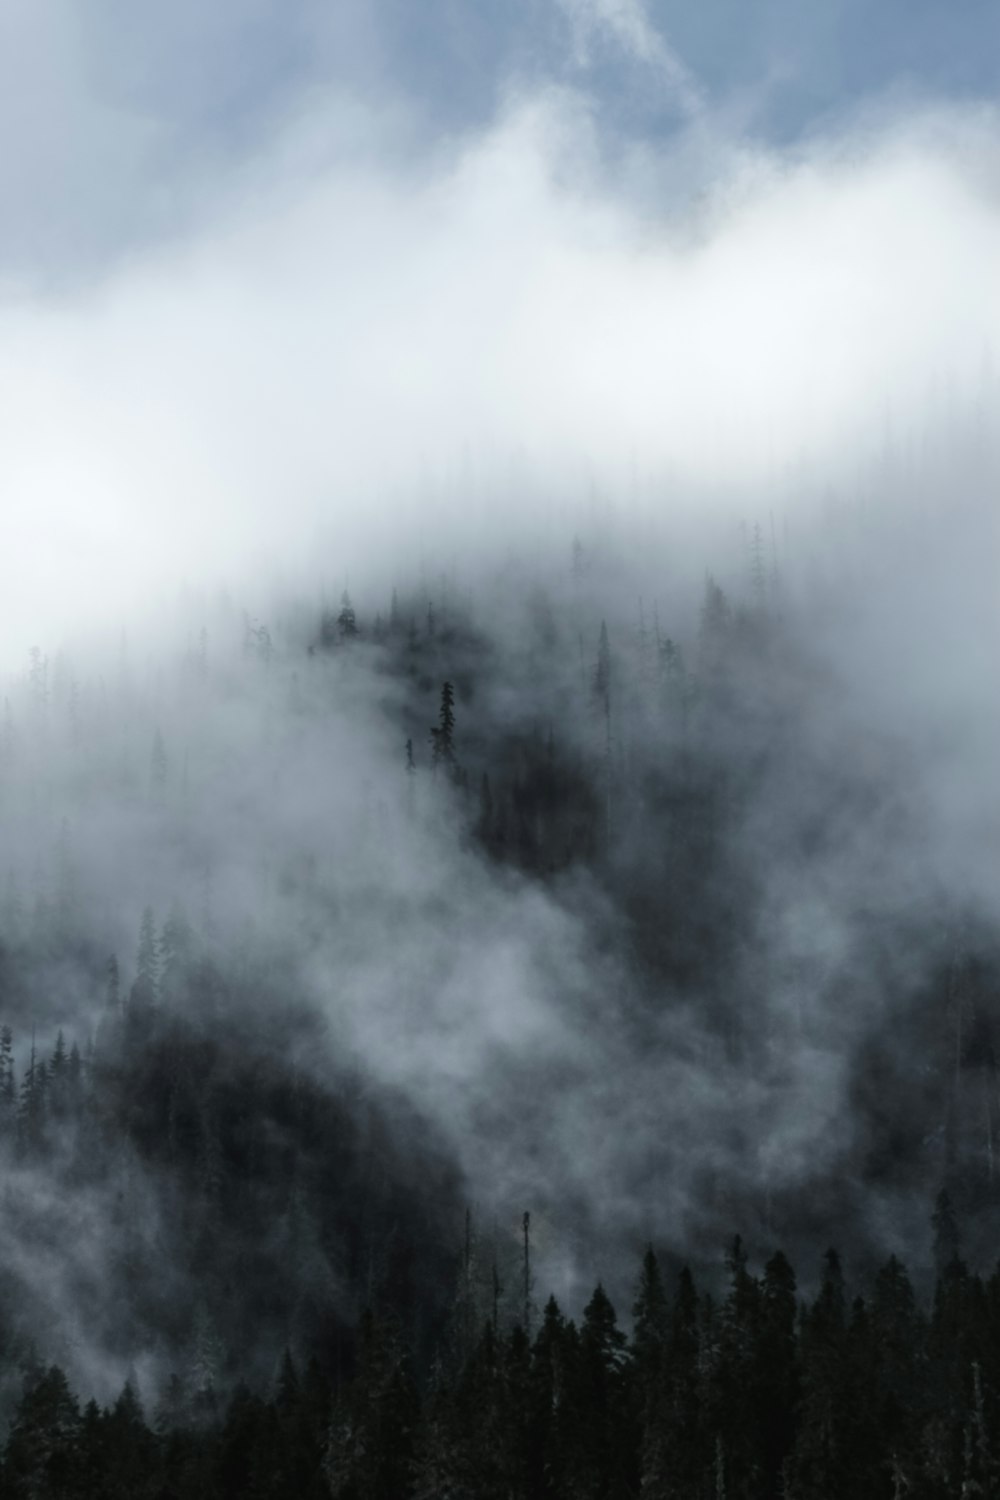 árboles del bosque cubiertos por la niebla